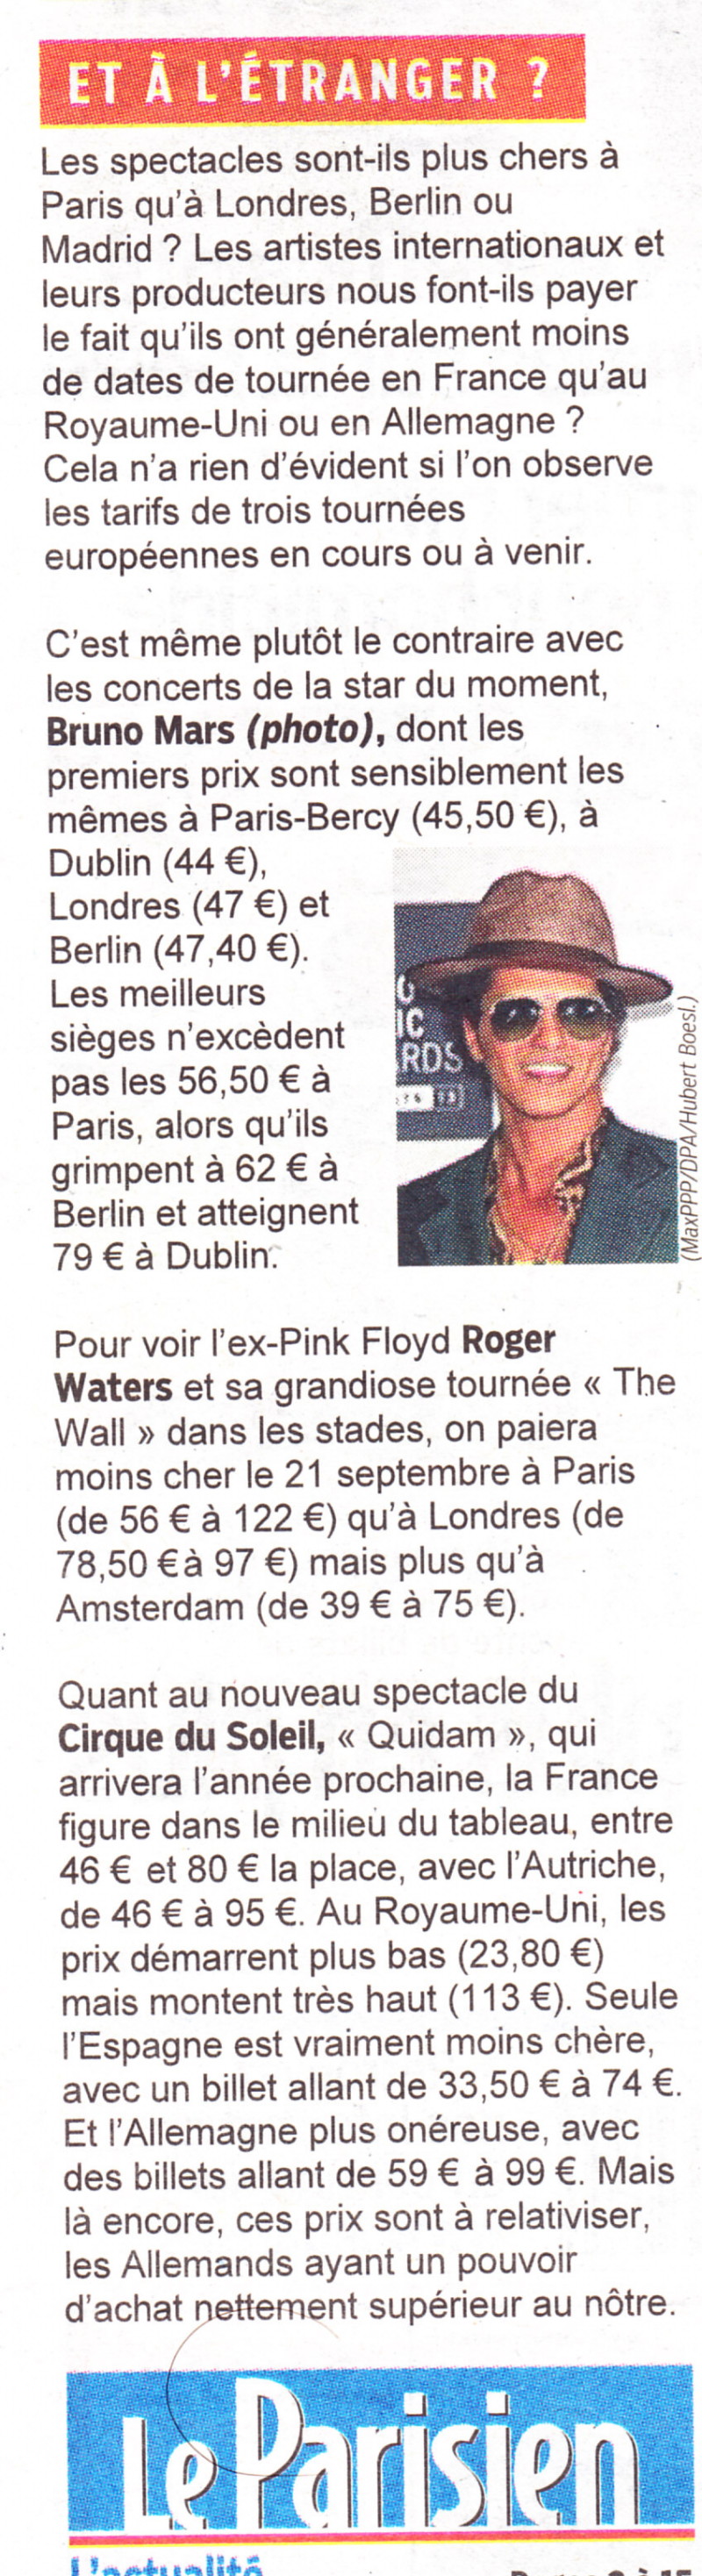 « Boycottons les concerts trop chers » ("Le Parisien", 14 septembre 2013) 13091404430516724011550564